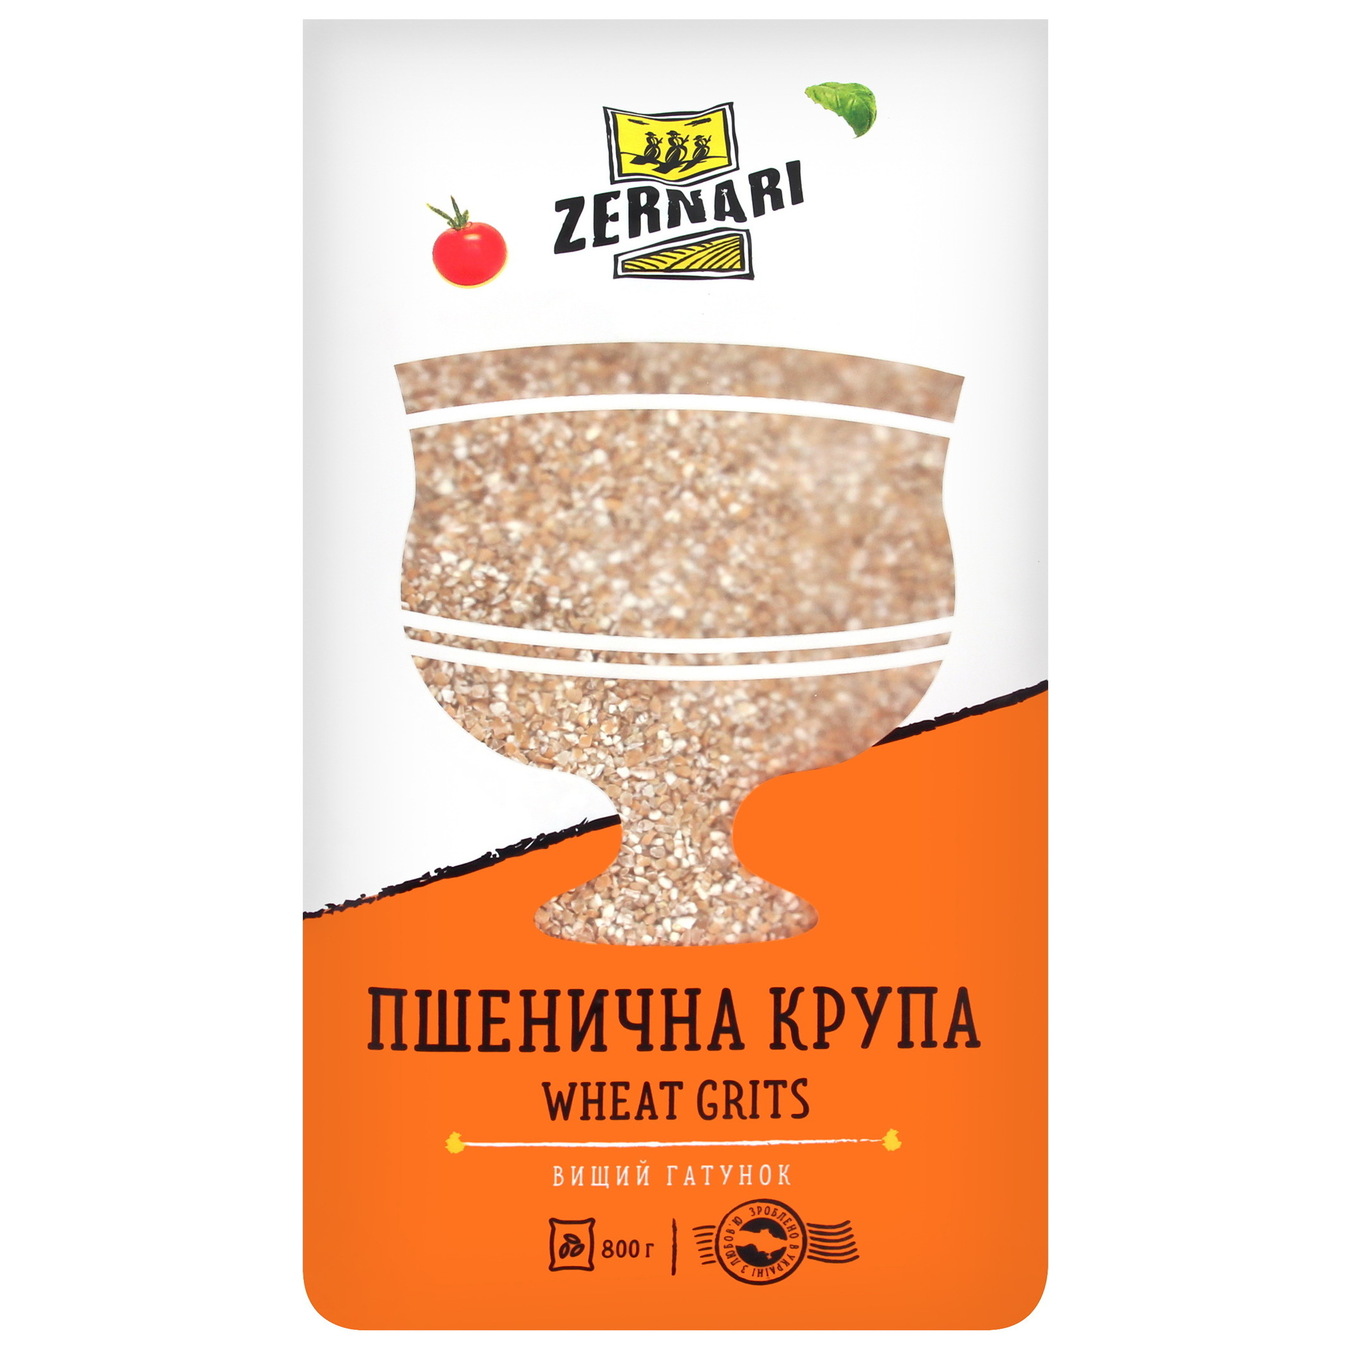 Zernari wheat groats 800g 2